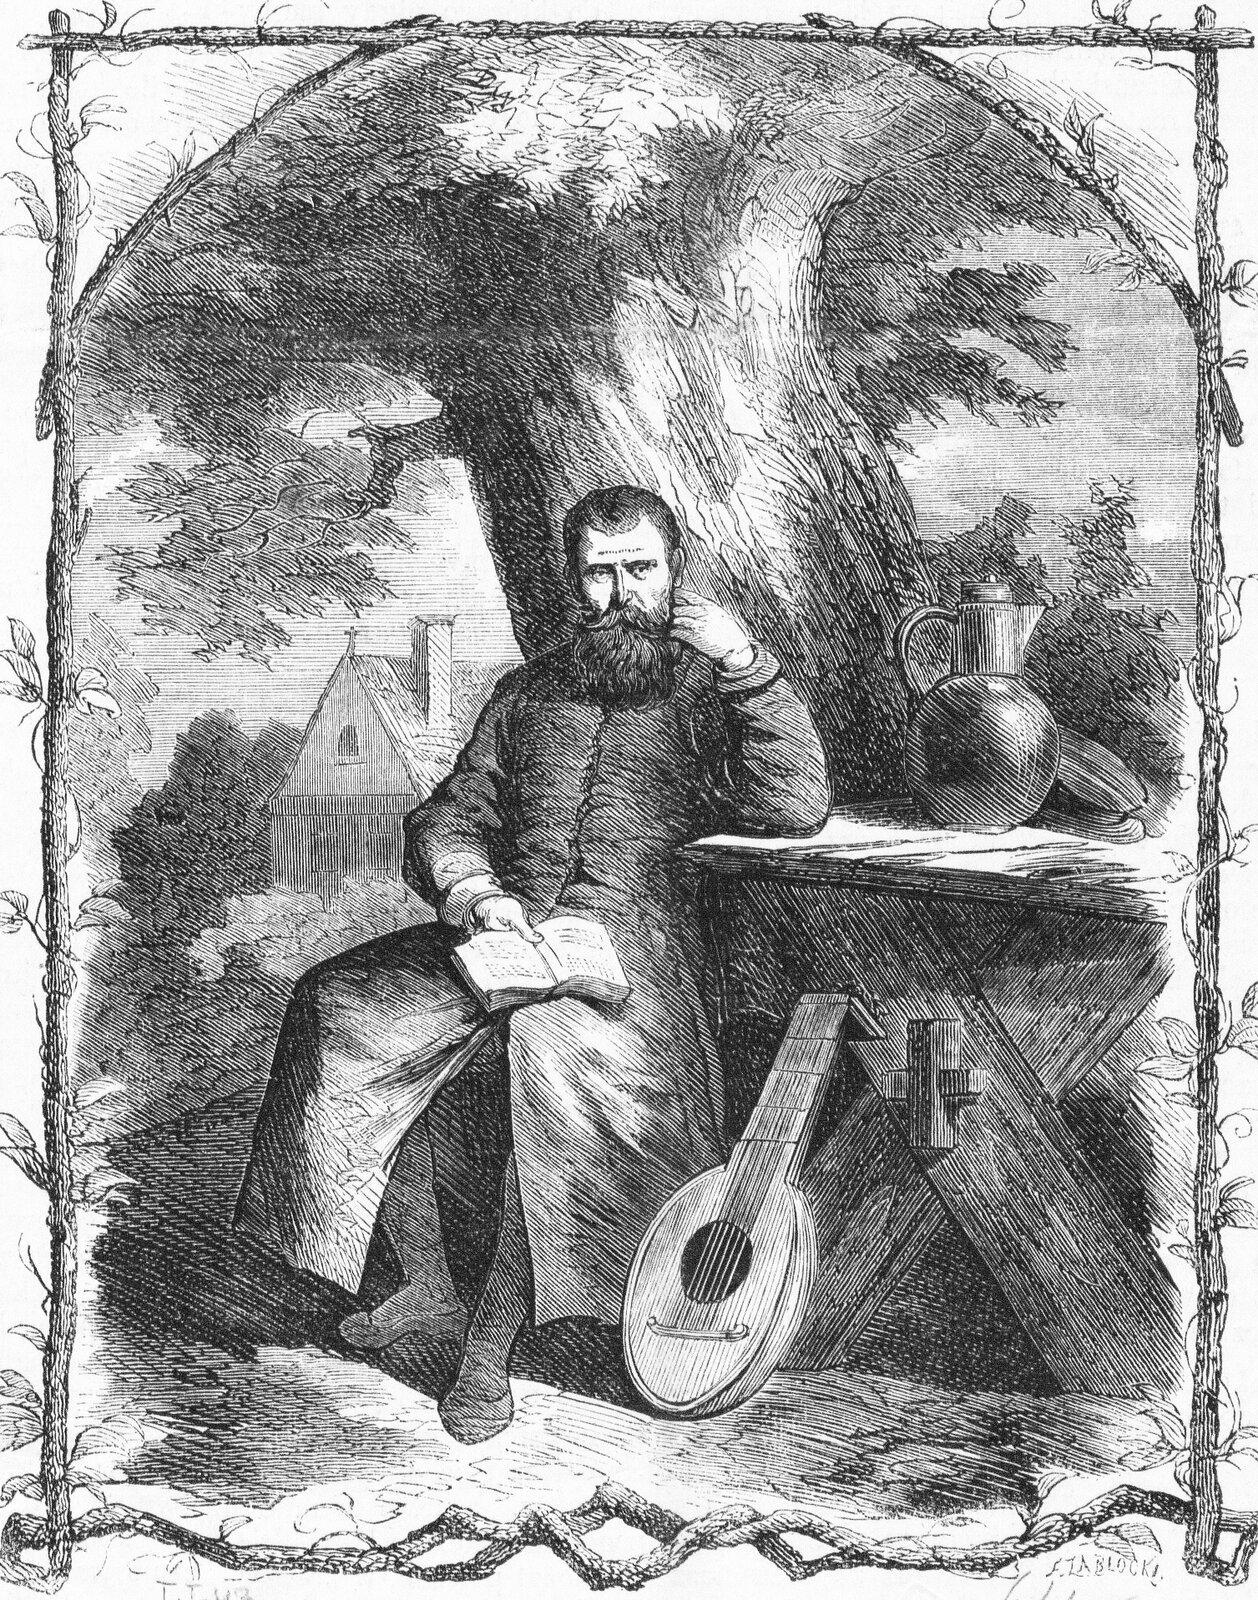 Ilustracja przedstawia dojrzałego mężczyznę z długą brodą z wąsami, który siedzi pod drzewem. Trzyma otwartą książkę. Ma rękę opartą na stole, na którym stoi dzbanek. O stół oparta jest gitara. 